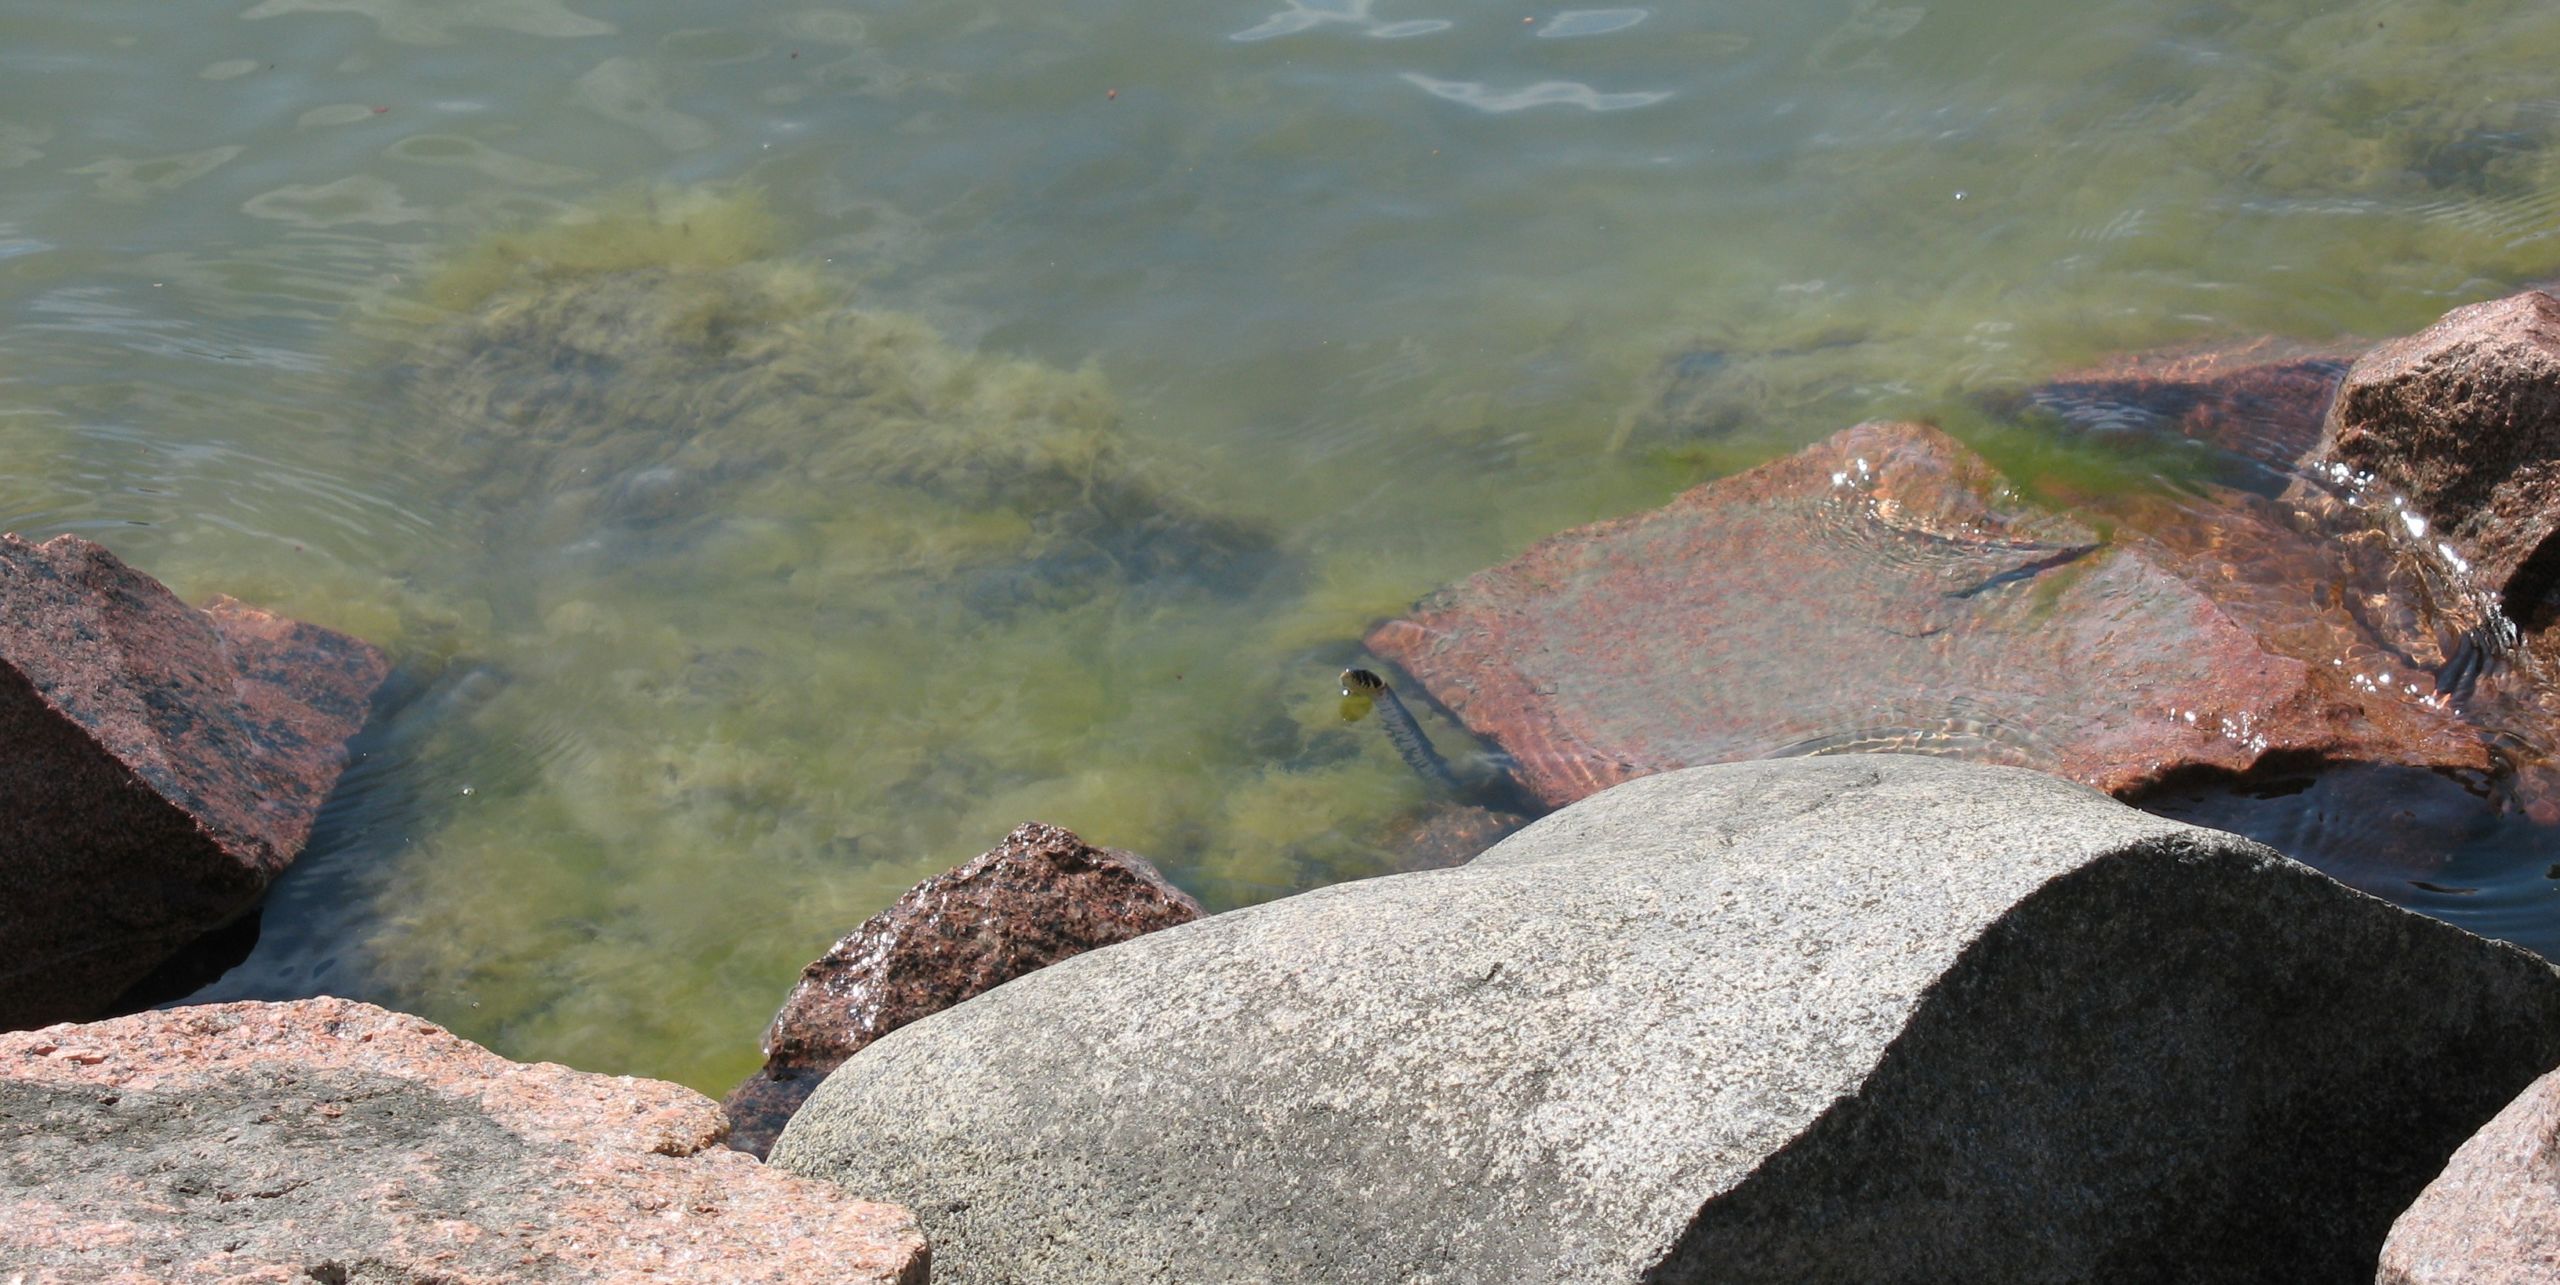 Stones along the seashore.